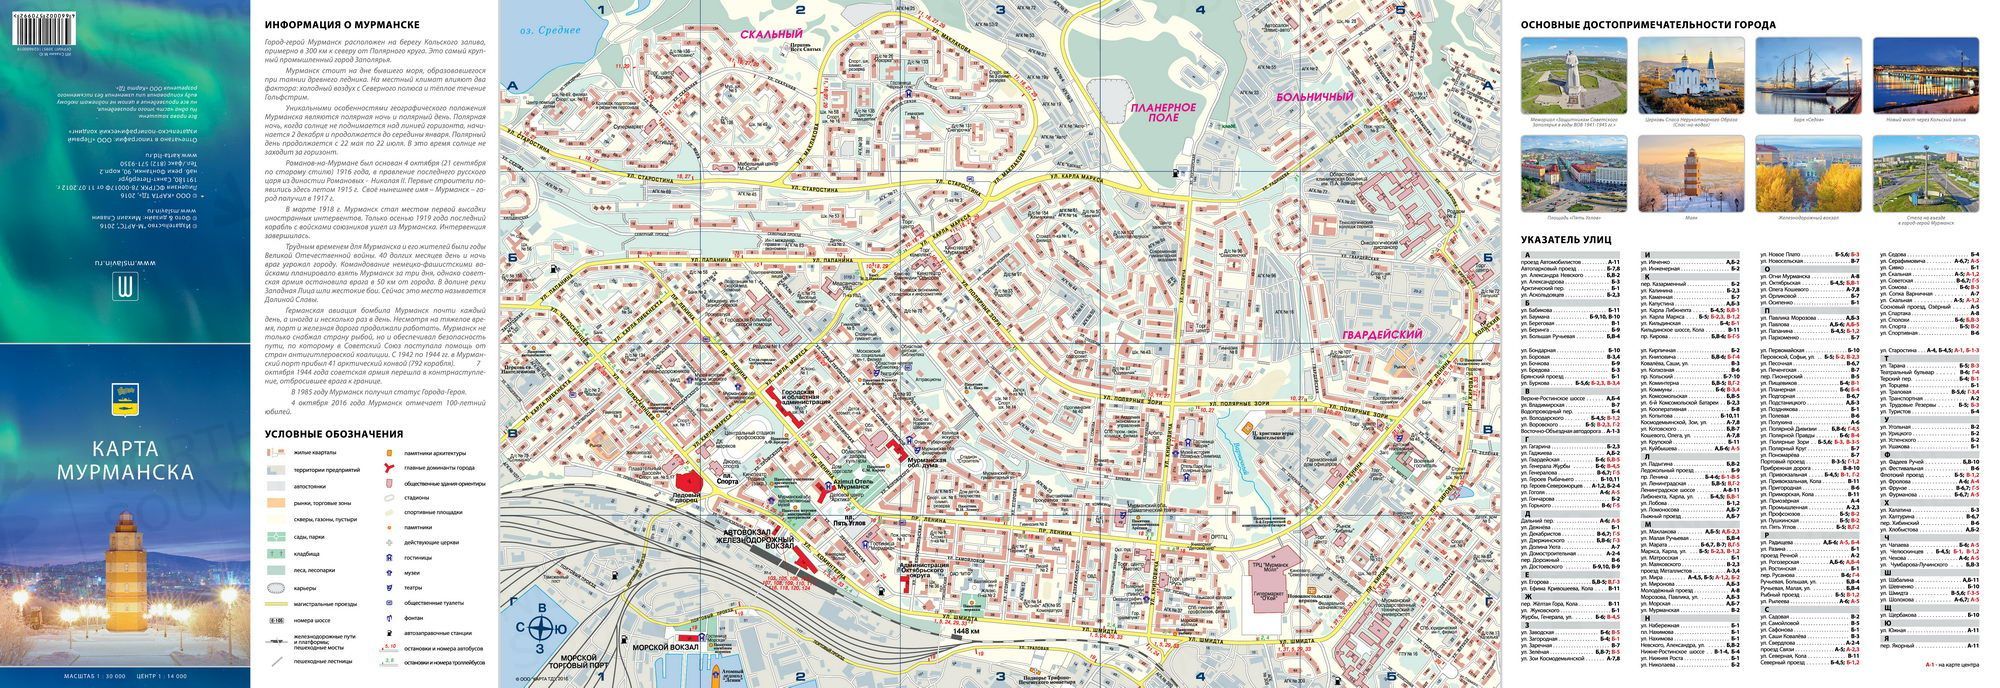 Карта Мурманска (2016 год)